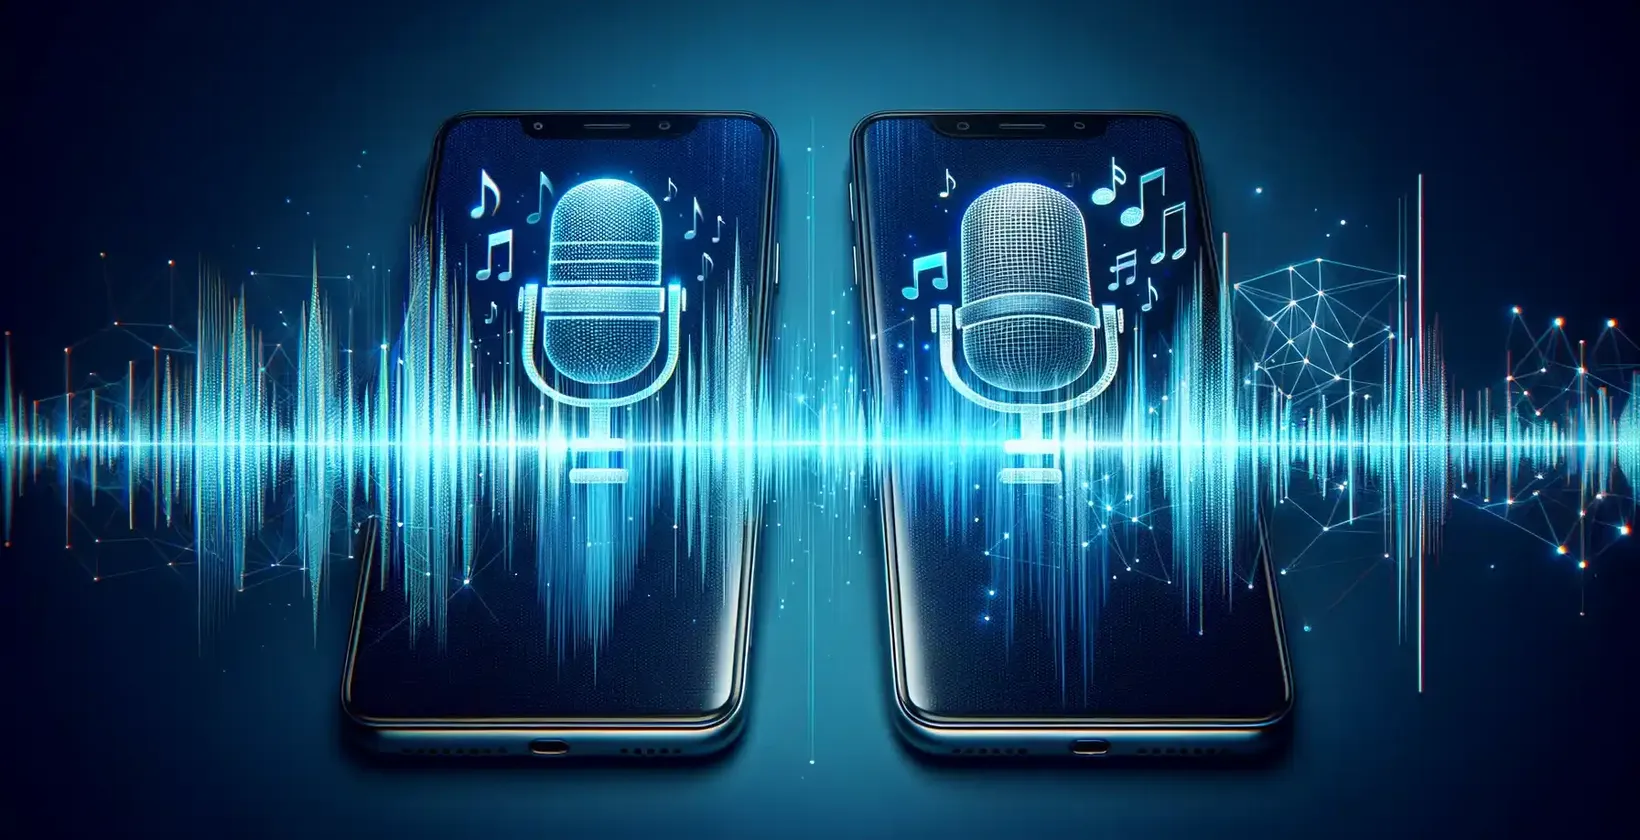 Divi viedtālruņi, kas simbolizē transkripcijas pakalpojumus, ar spilgtām mikrofona ikonām starp digitālajām viļņu formām.